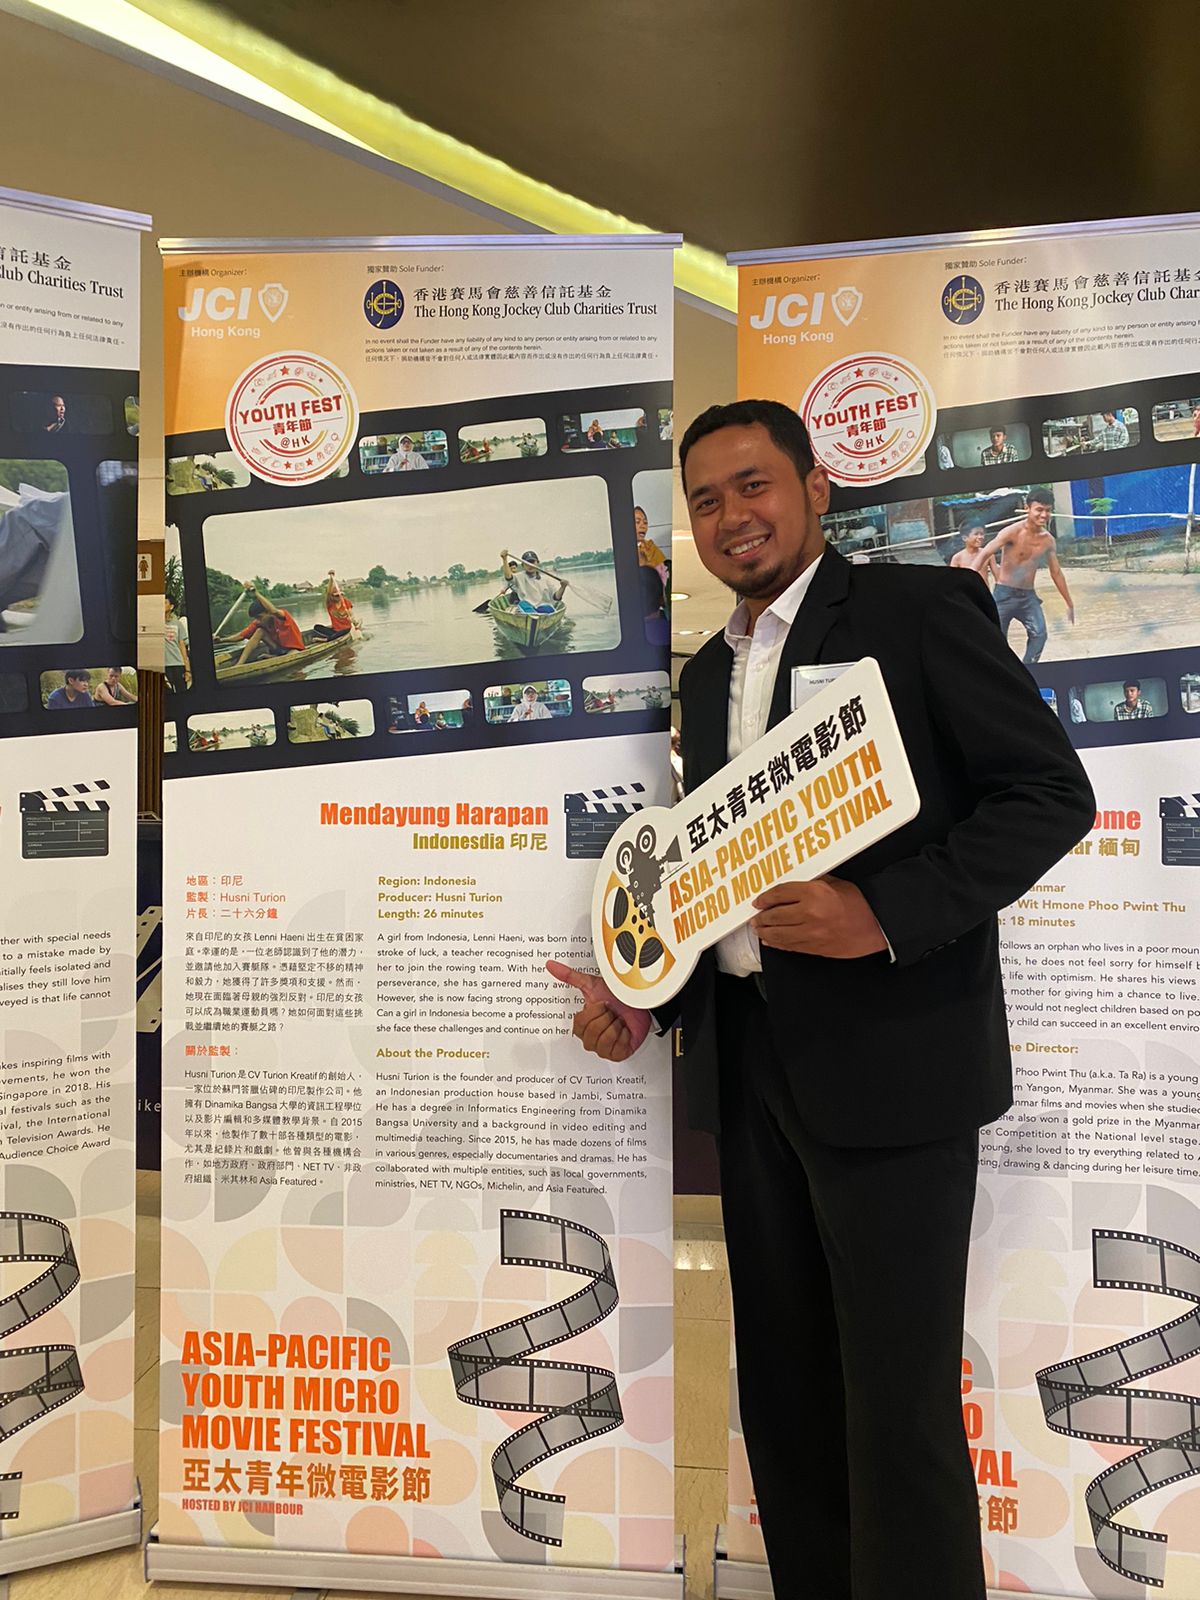 Husni Turion Wakili indonesia di Micro Film Festival Hongkong